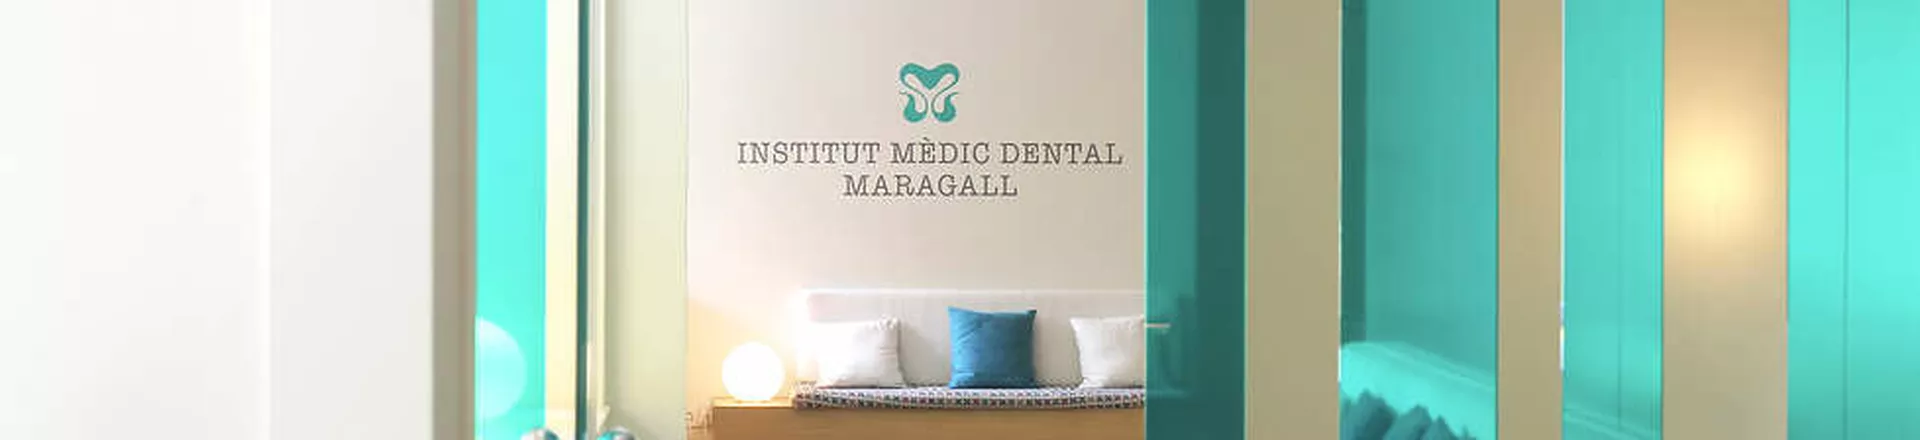 Institut Mèdic Dental Maragall